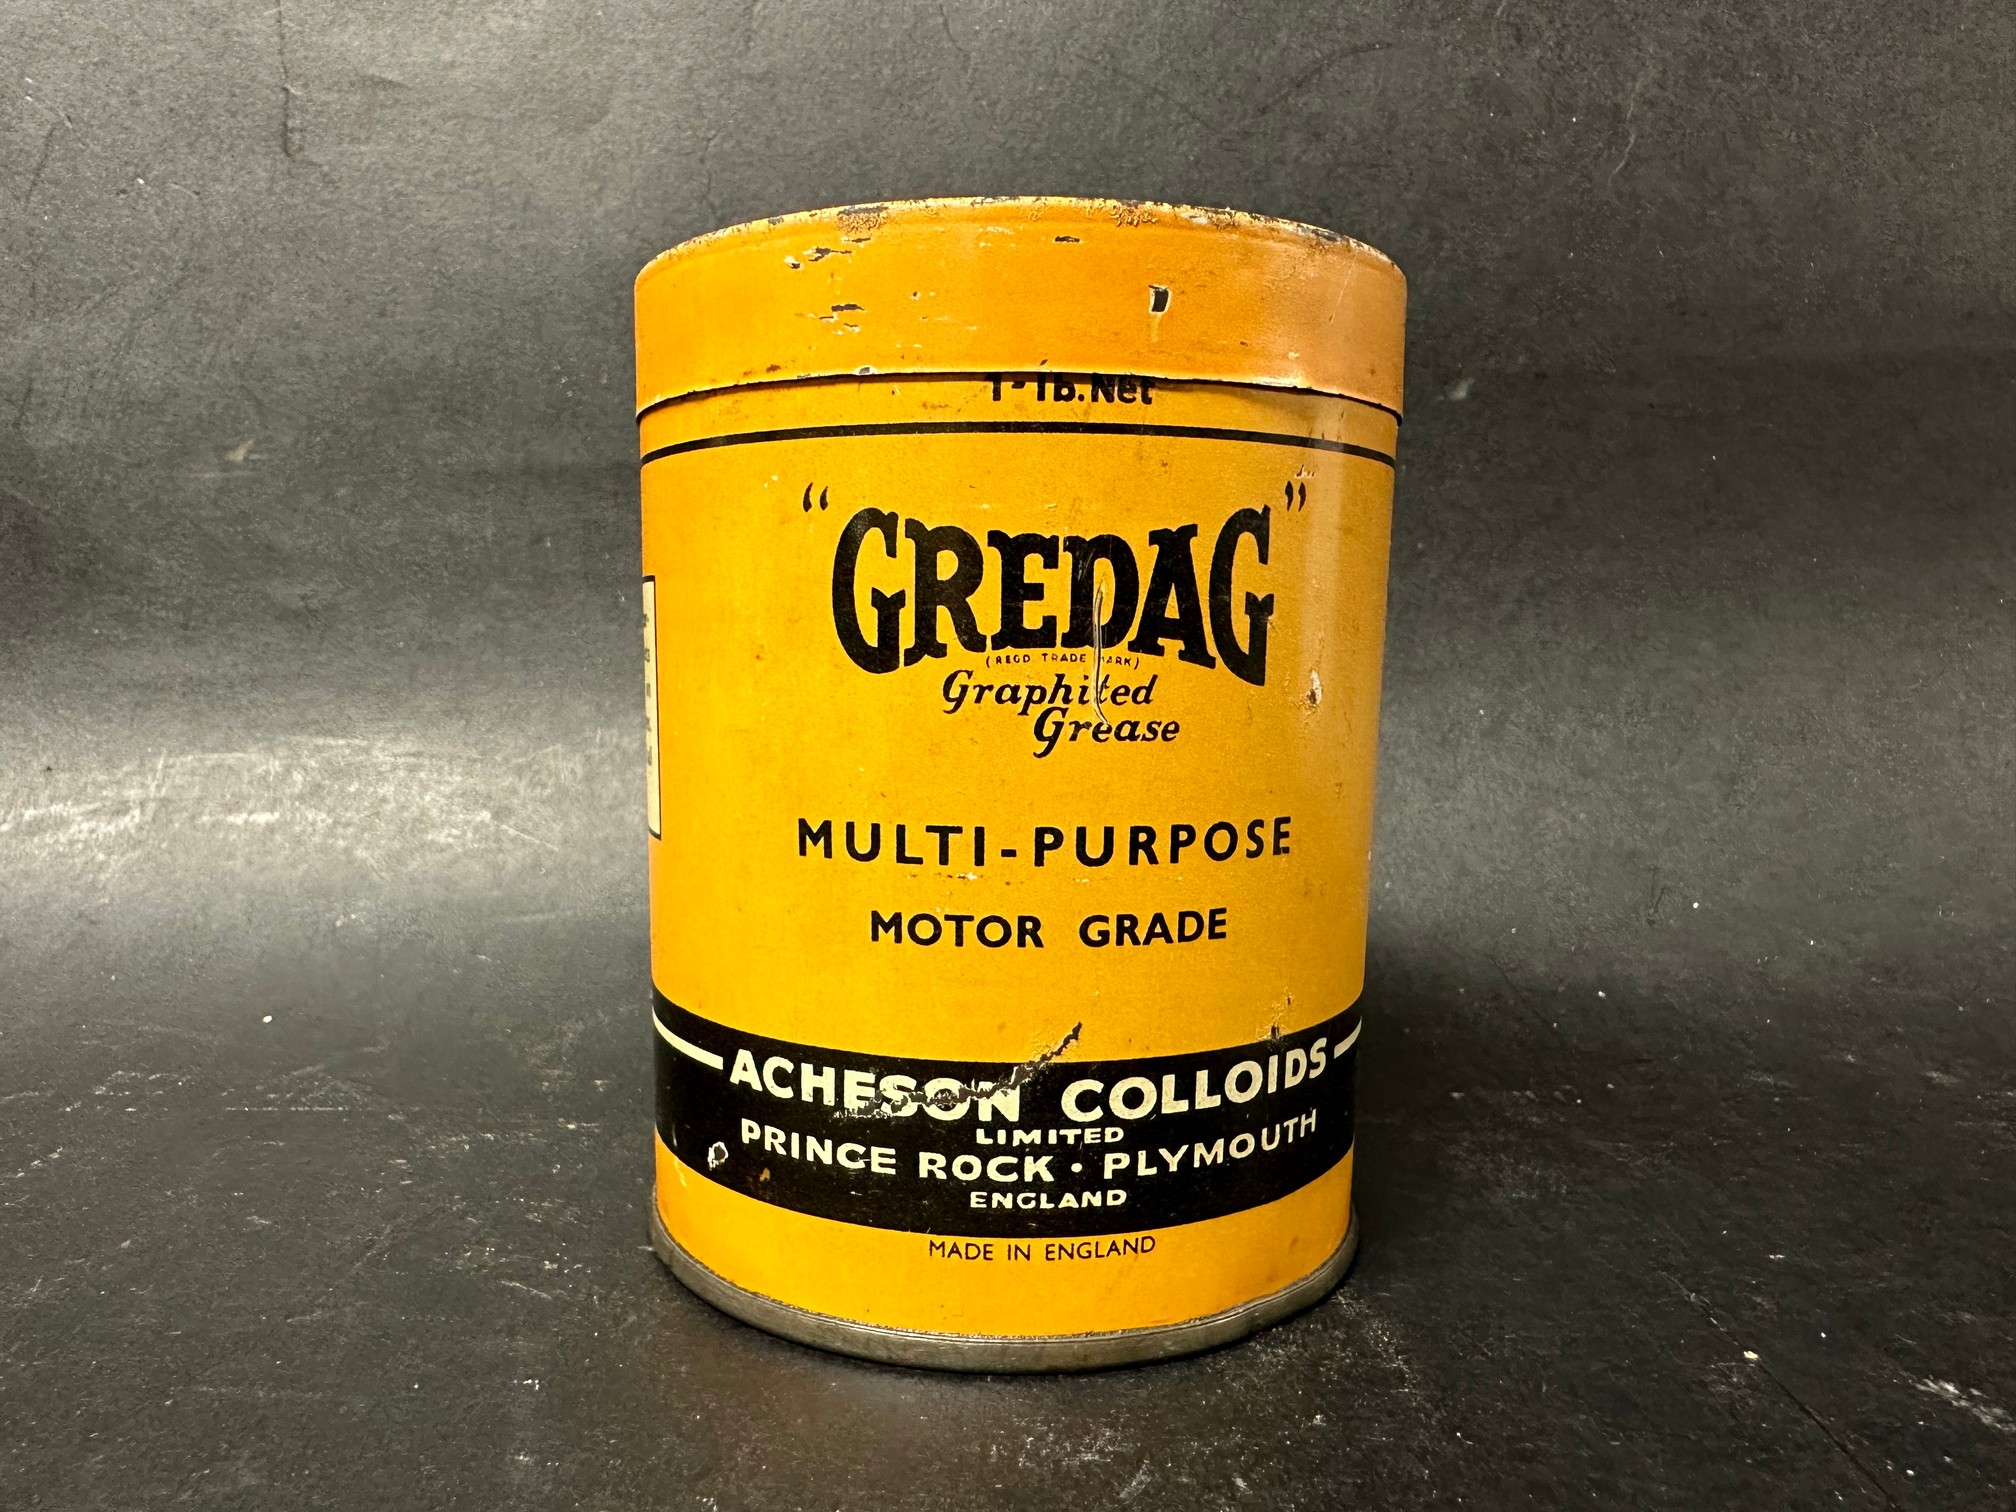 A Gredag 1lb multi purpose graphited grease tin.